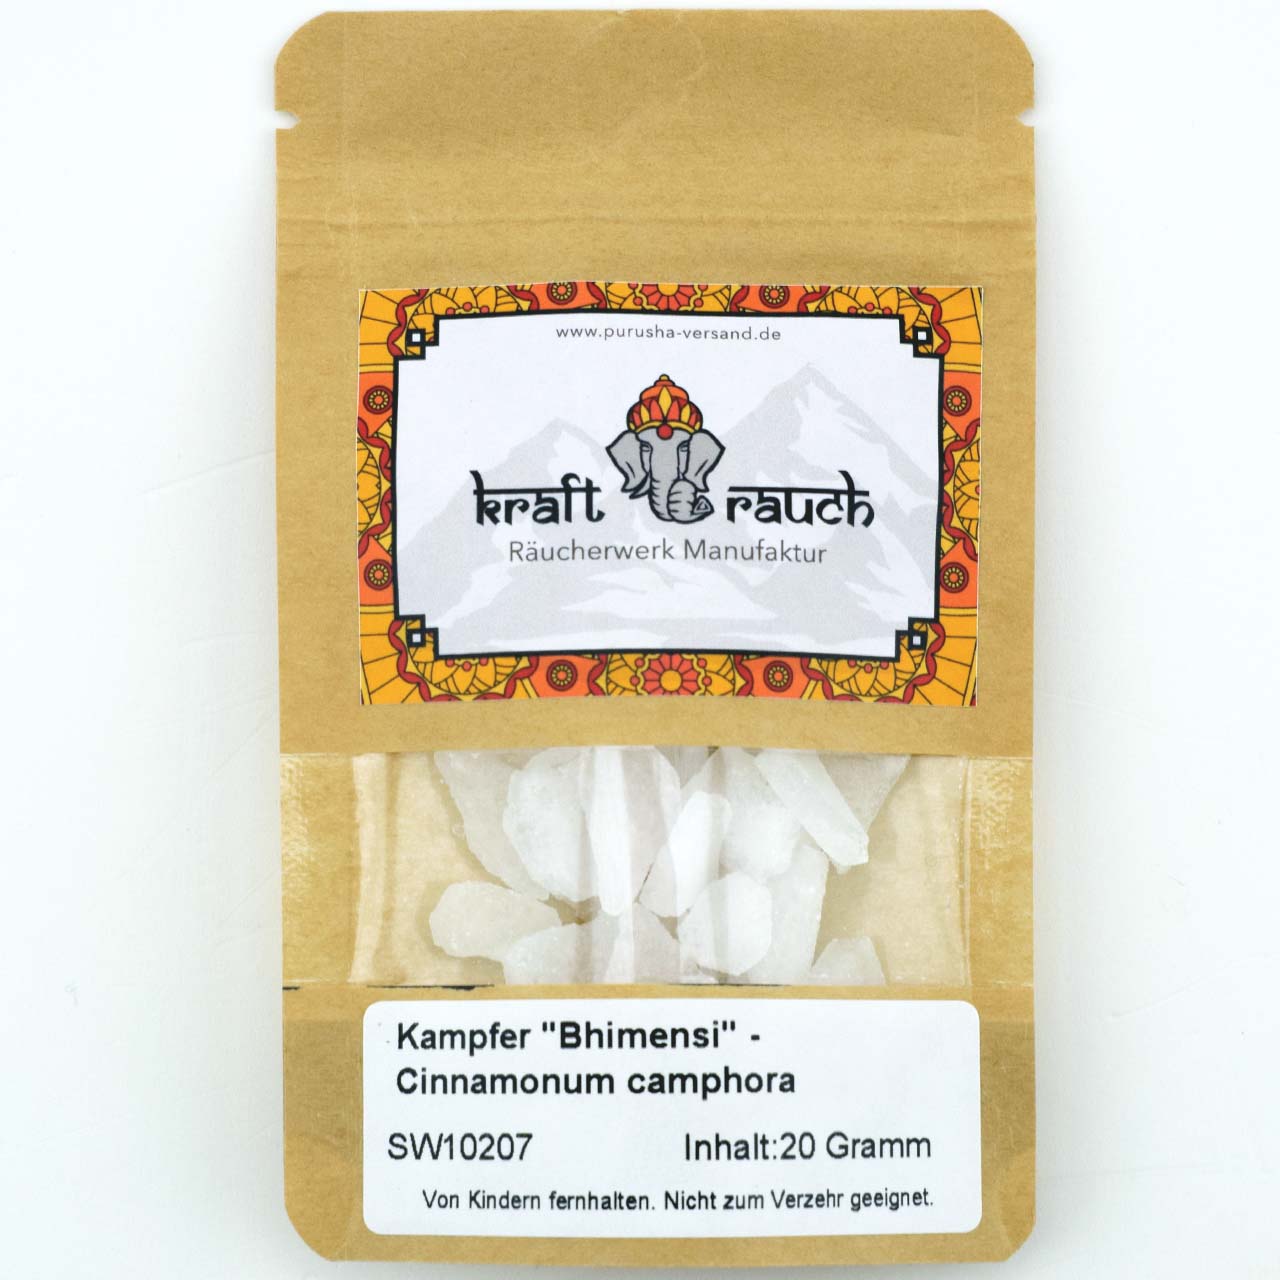 Kampfer "Bhimensi" - Cinnamomum camphora